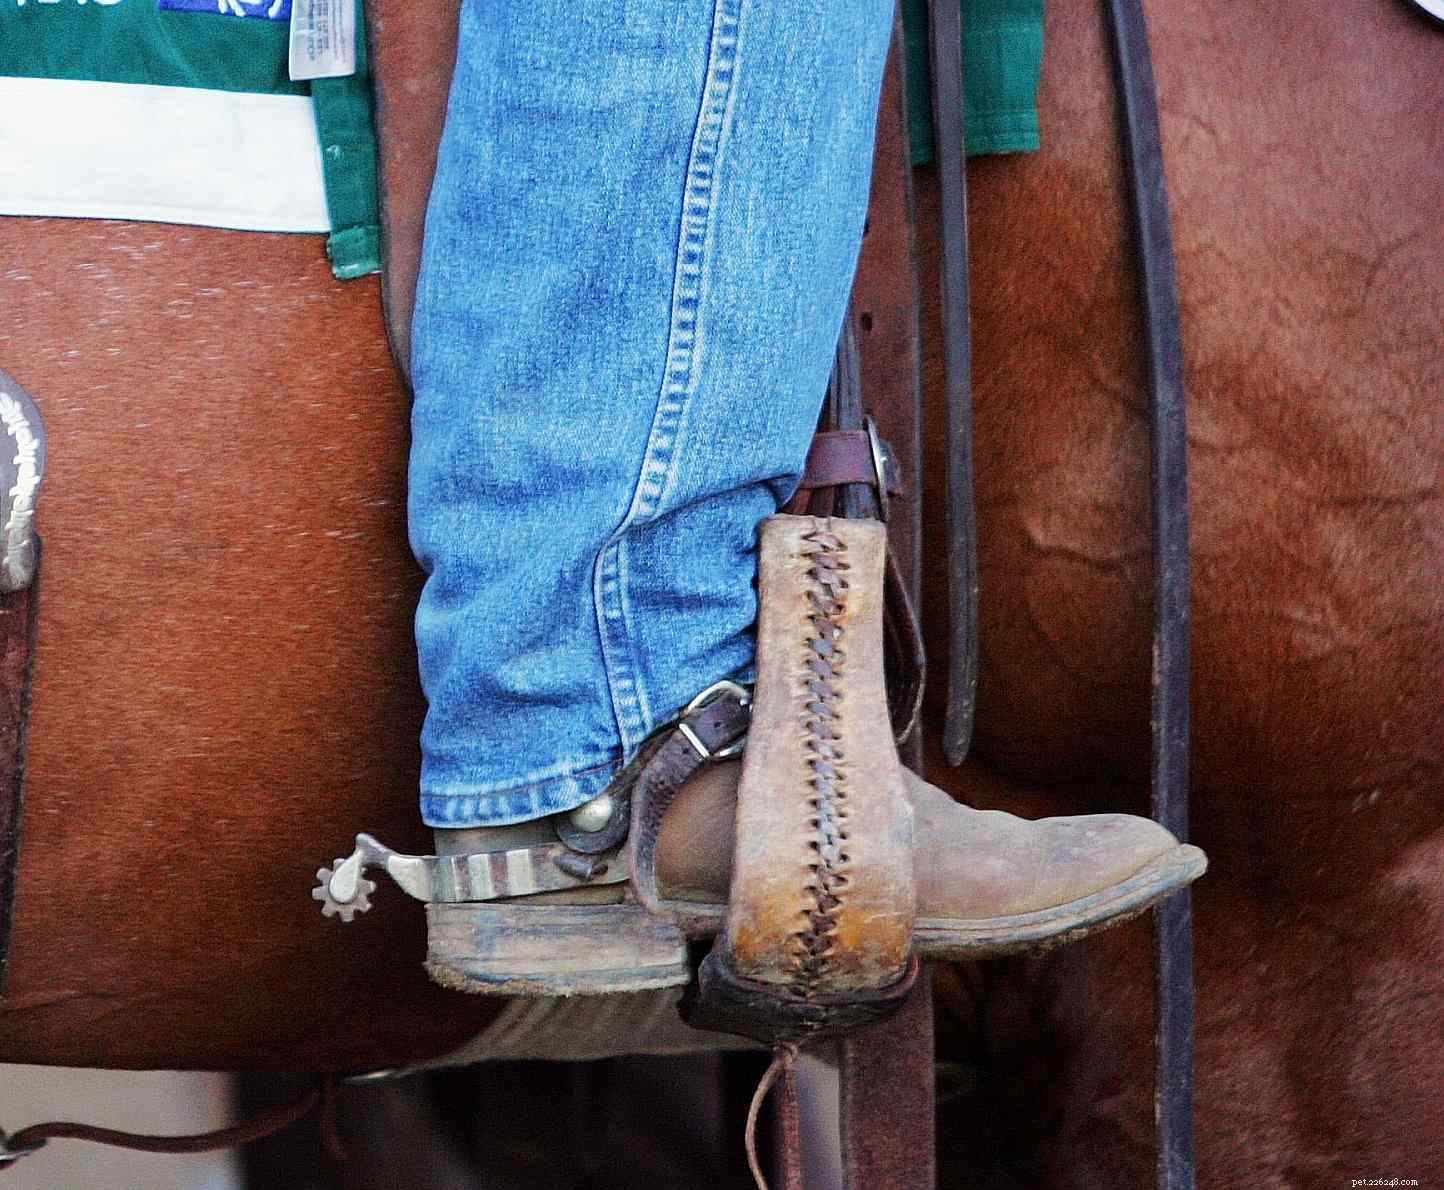 Punire il tuo cavallo:cosa funziona e cosa non funziona